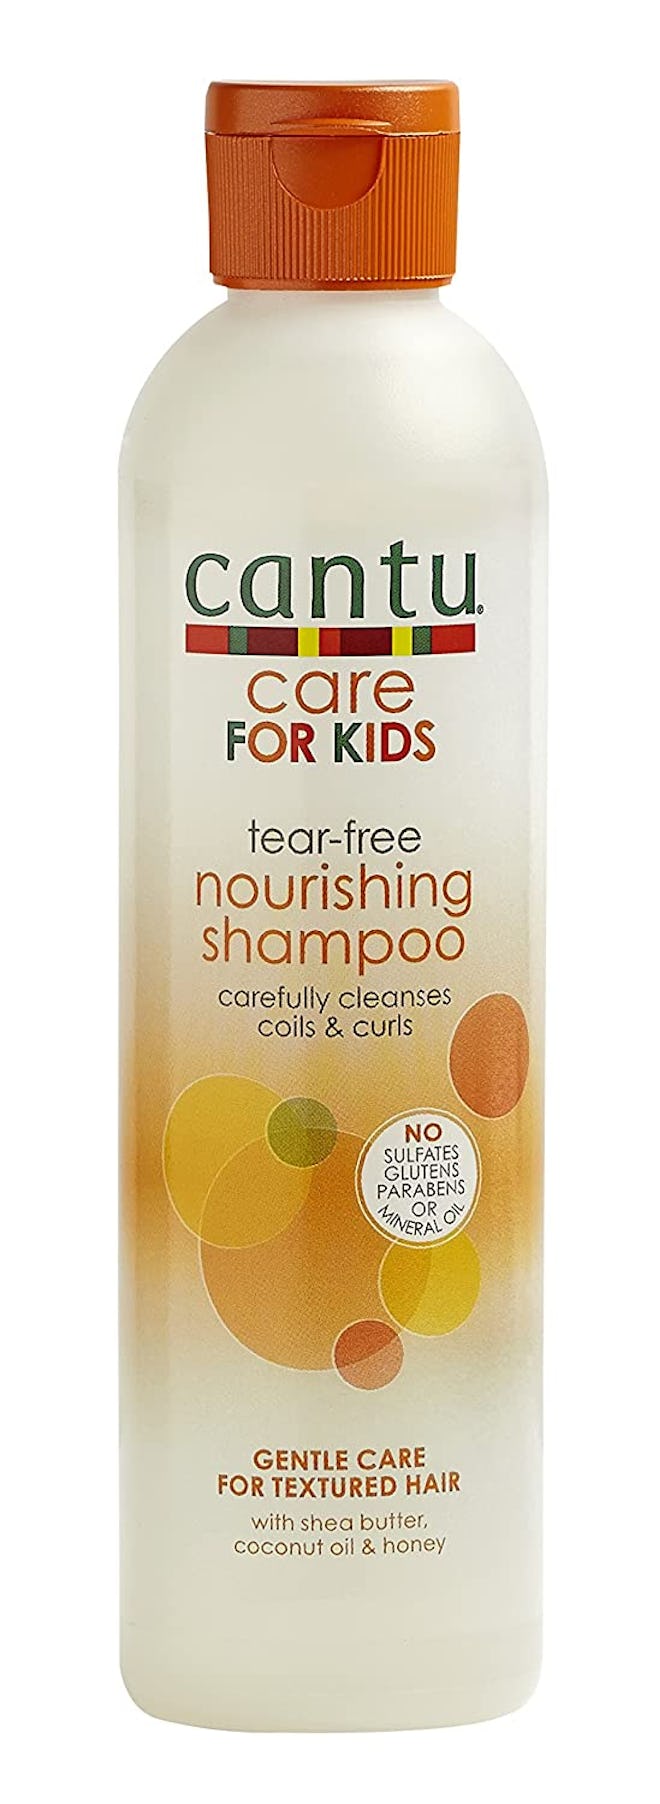 Cantu Care for Kids Tear-Free Nourishing Shampoo (8 Ounces)